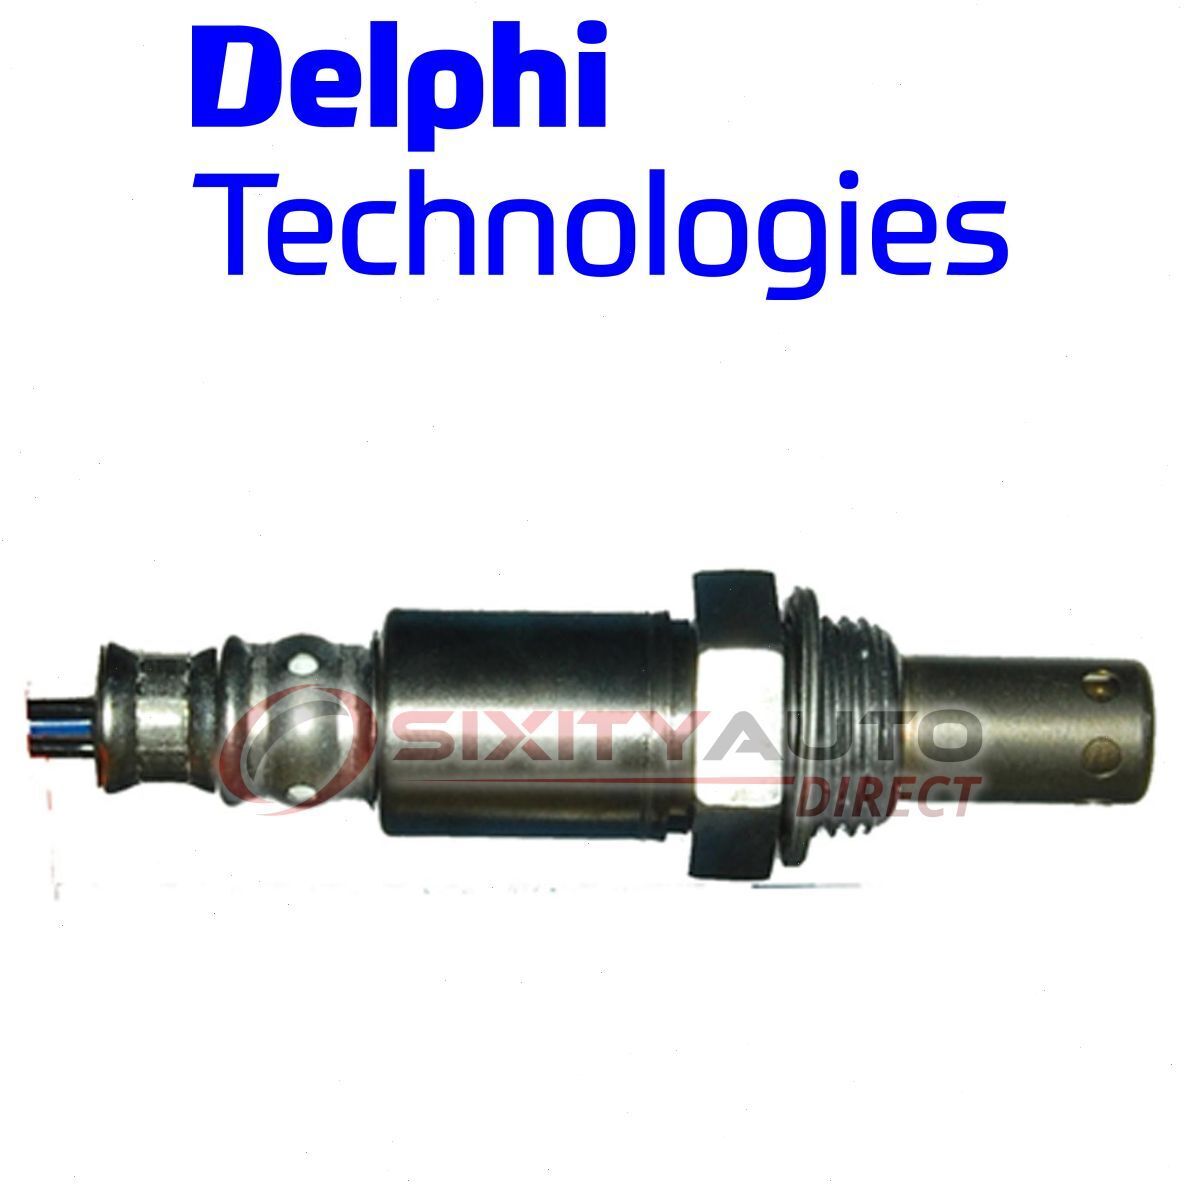 Delphi Front Left Oxygen Sensor for 2007-2011 Lexus GS450h Exhaust Emissions um